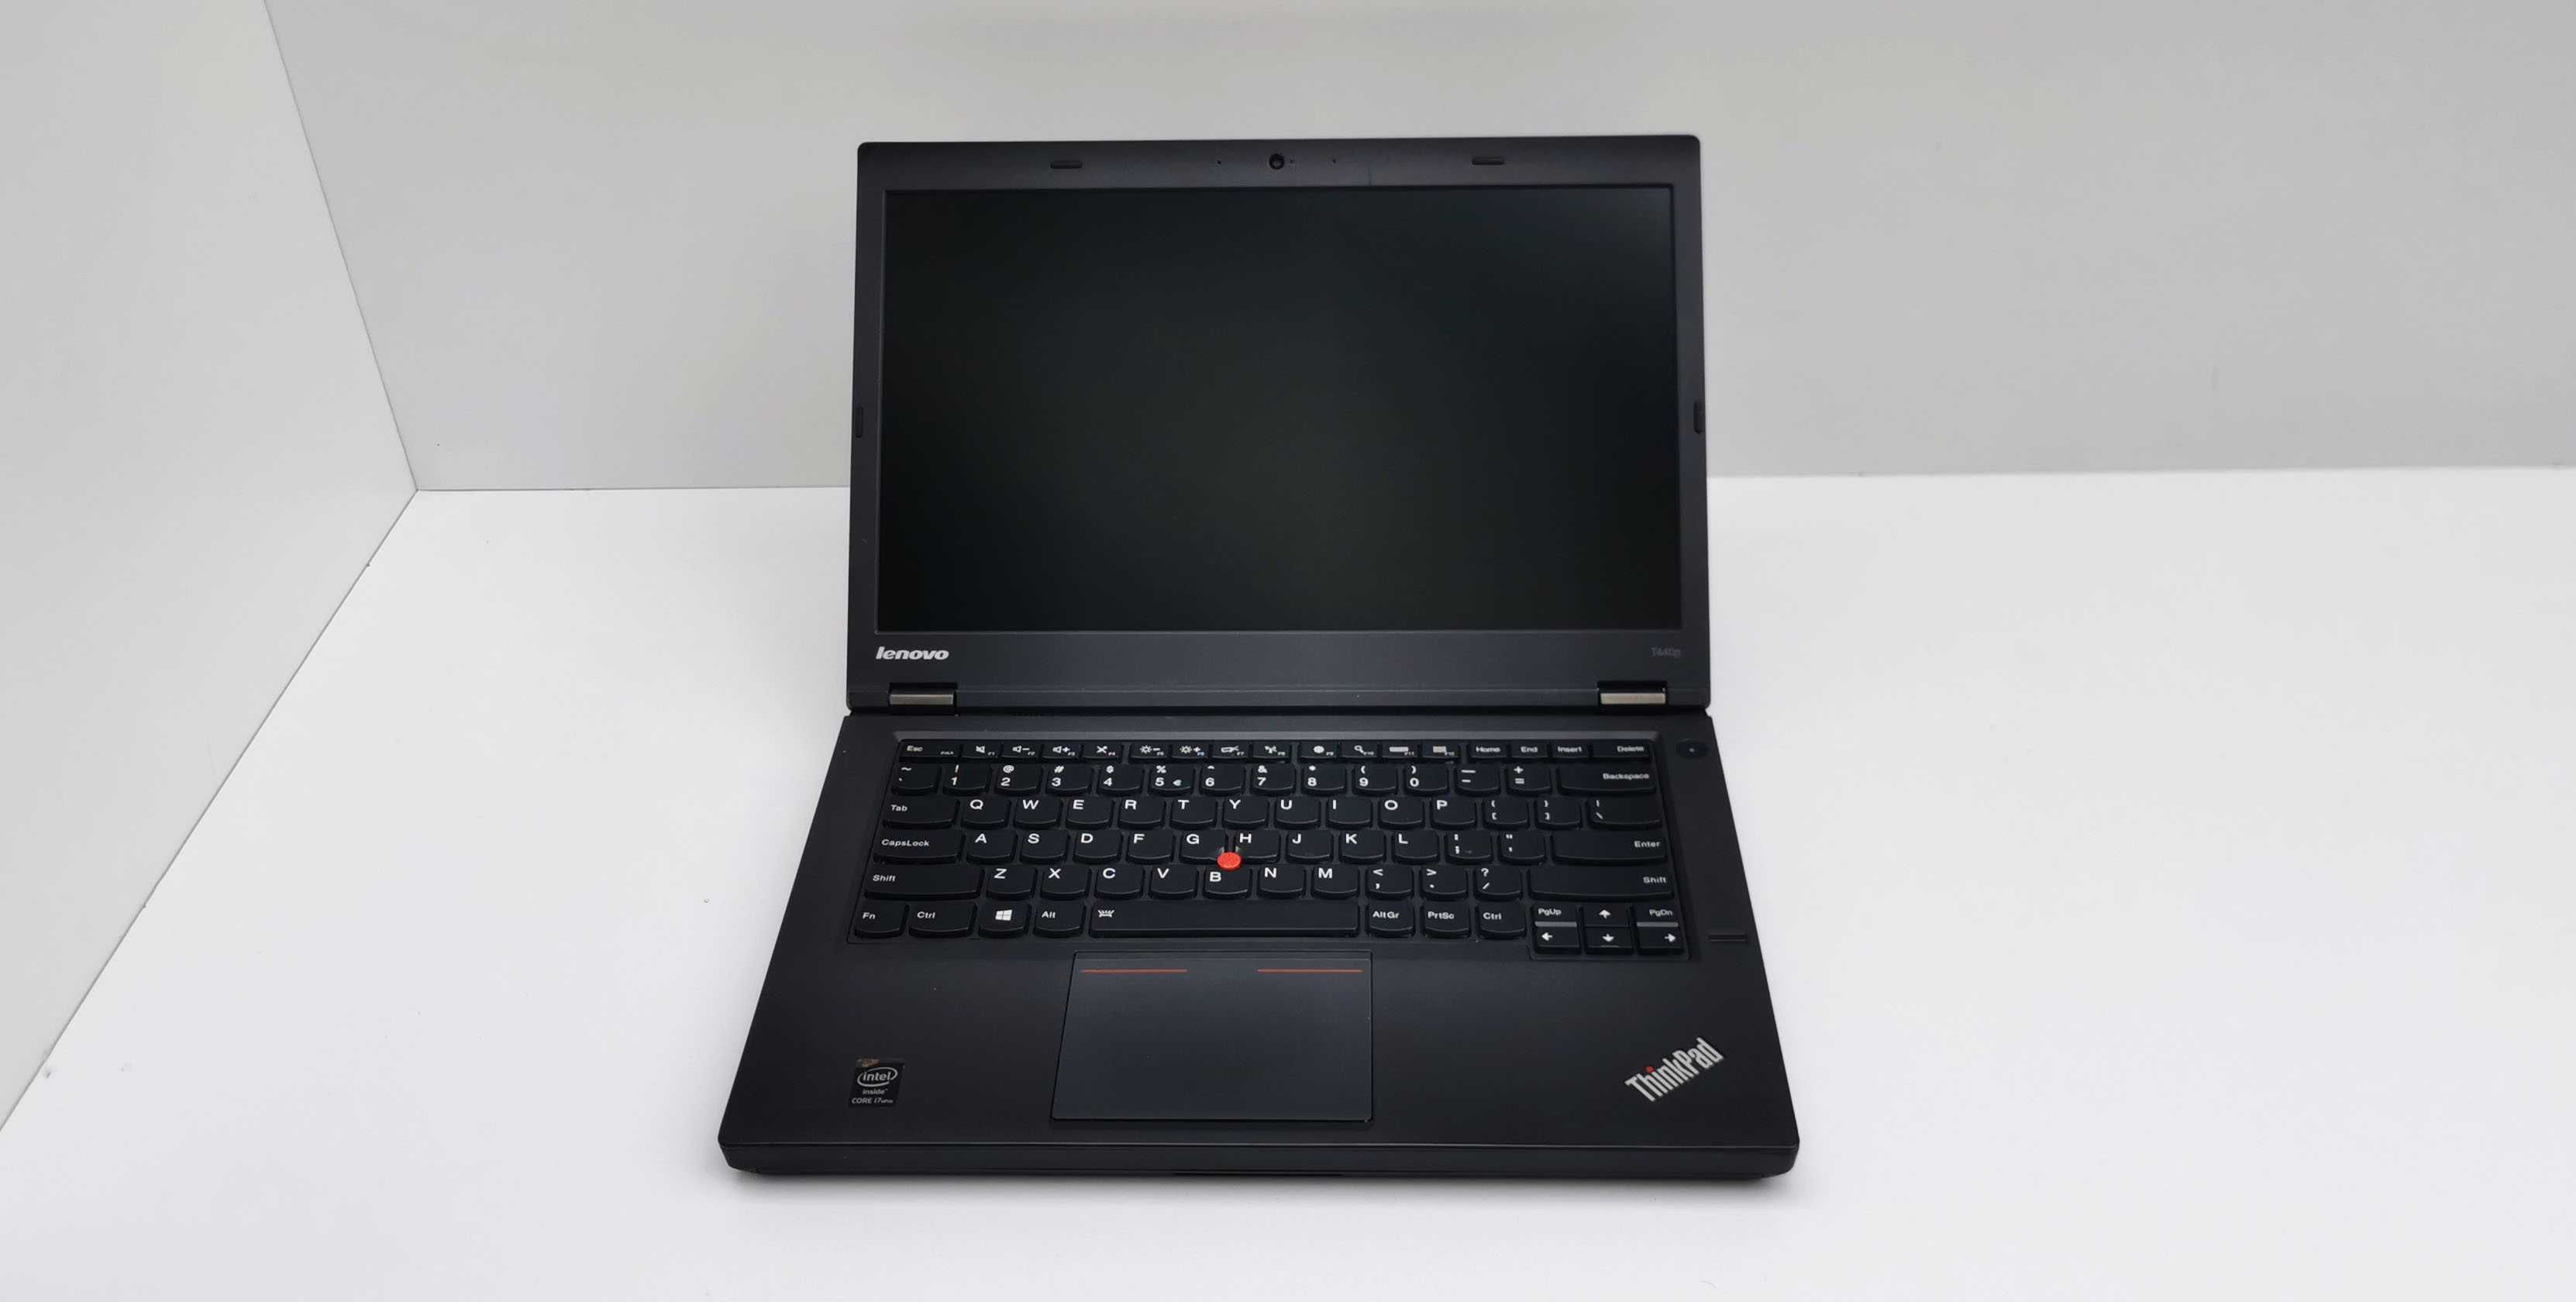 Lenovo ThinkPad T440p intel i7 4600M 8 GB RAM 256 GB SSD